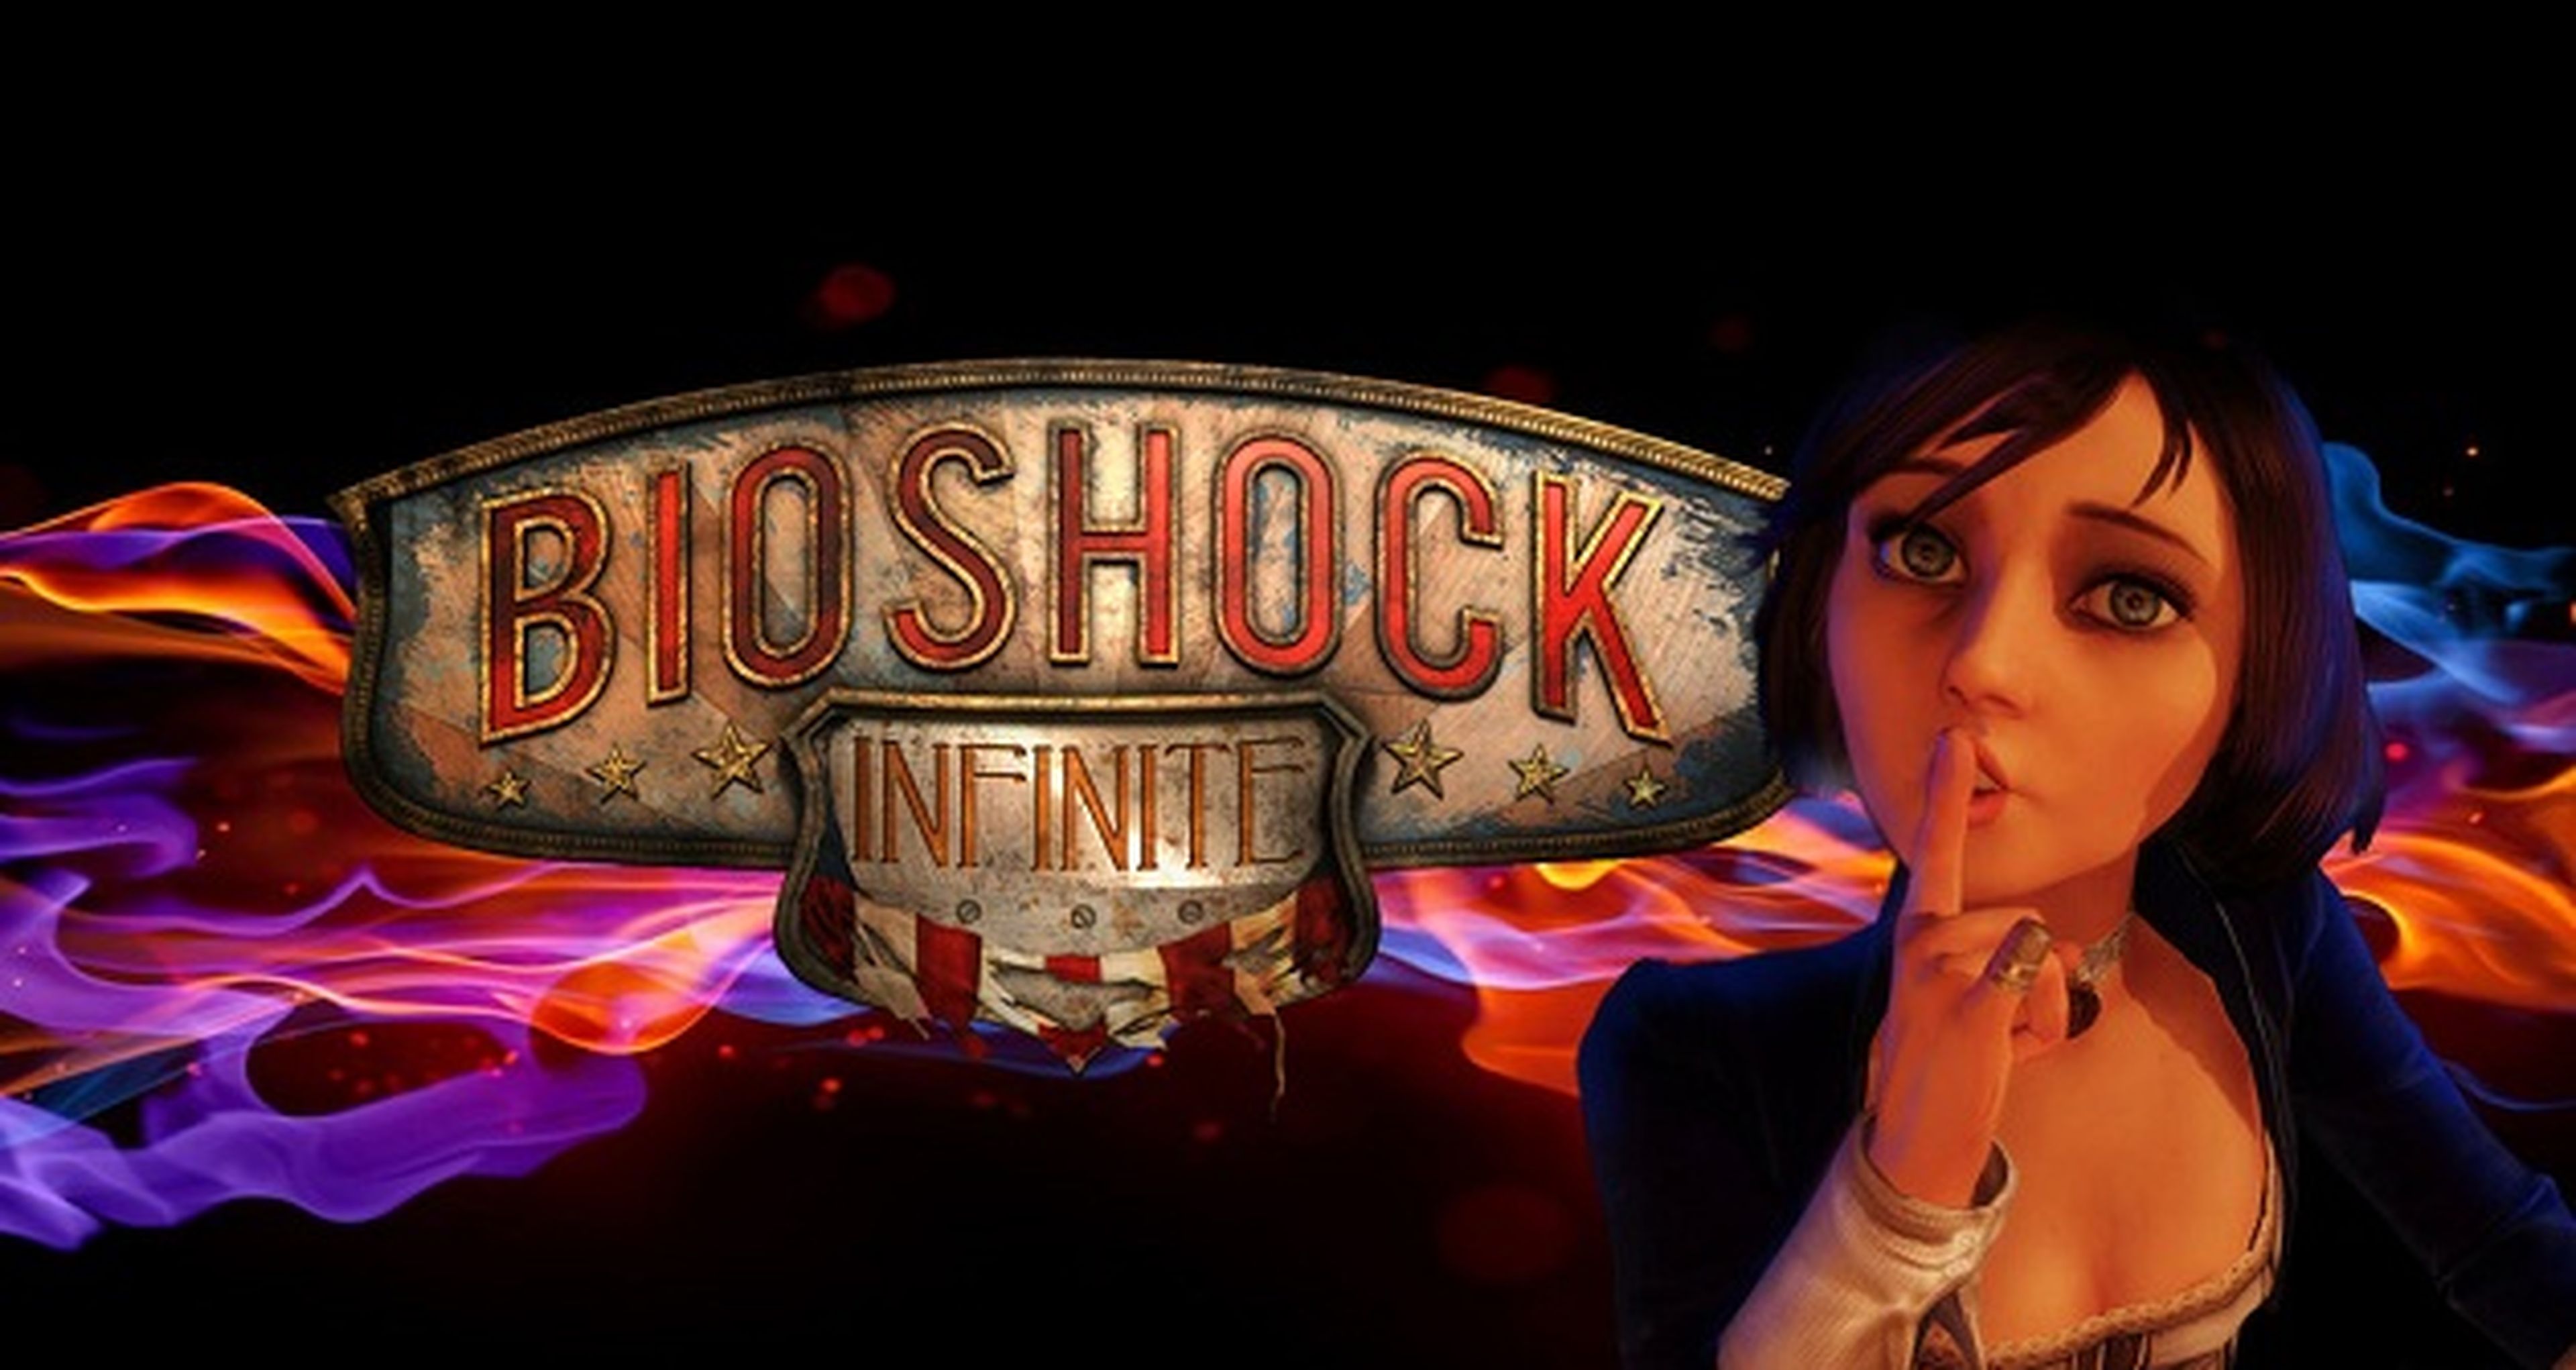 Elizabeth de Bioshock Infinite pudo haber sido muda